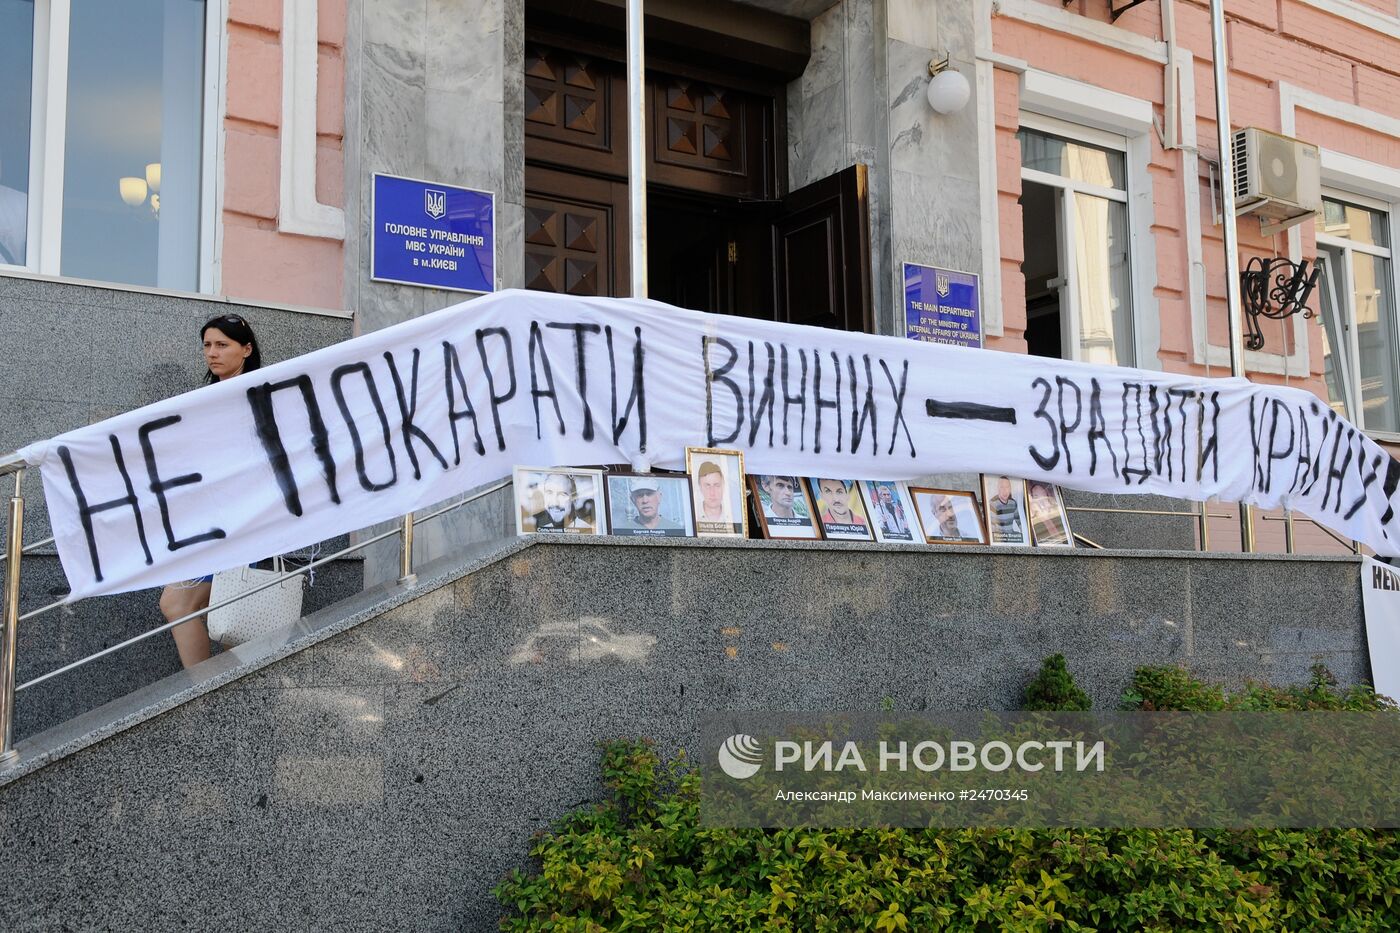 Акция "Ненаказанное зло растет!" в Киеве